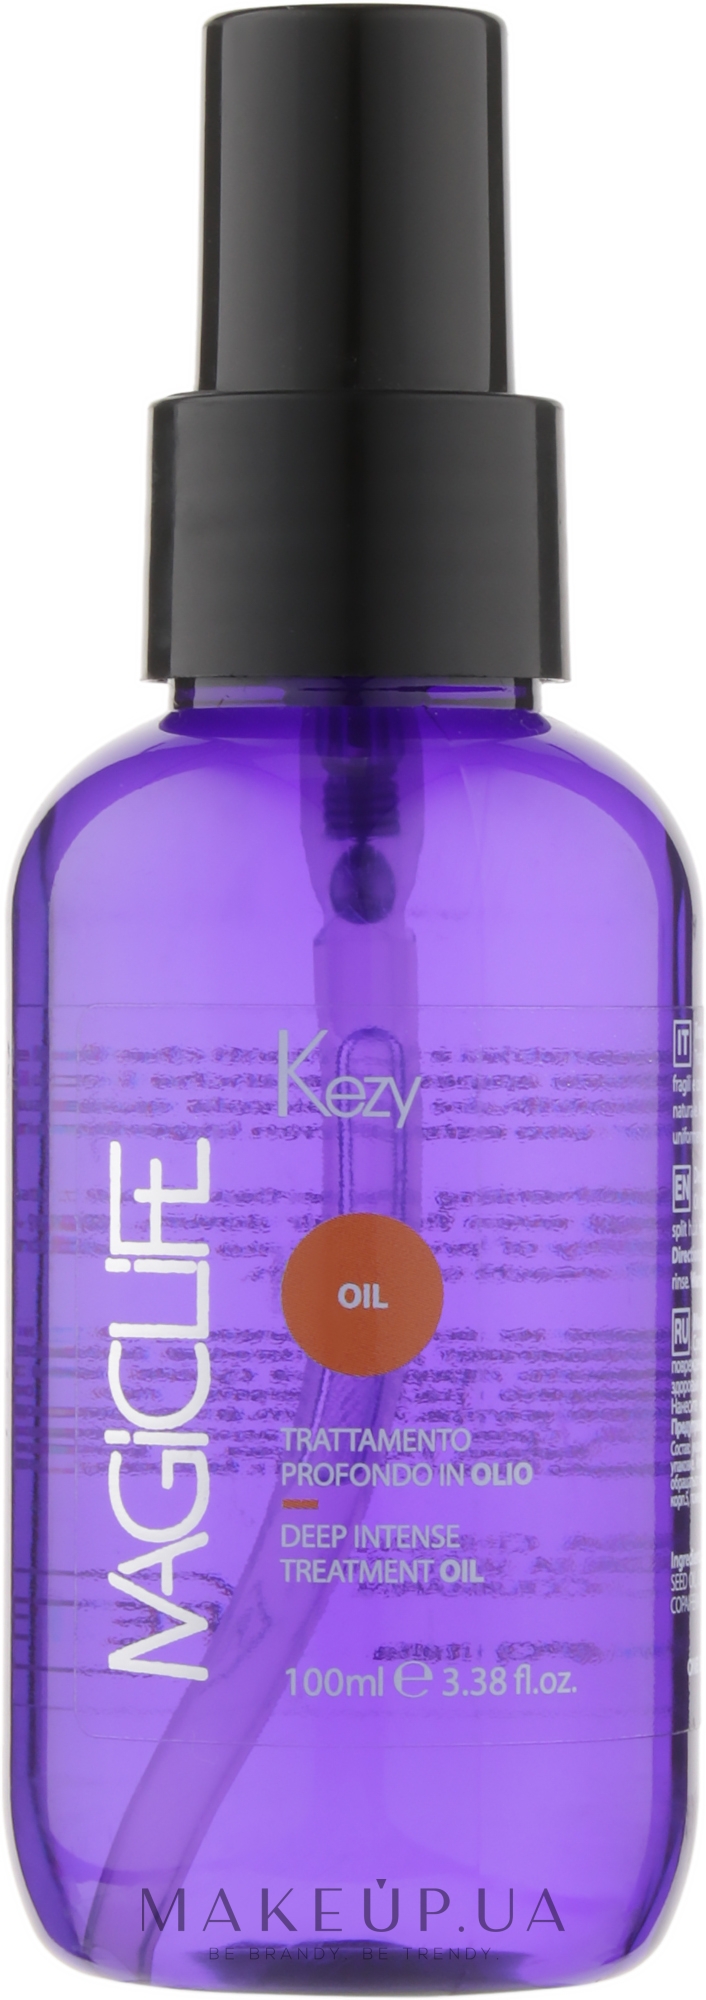 Олія для волосся, для глибокого догляду - Kezy Magic Life Deep Intense Treatment Oil — фото 100ml